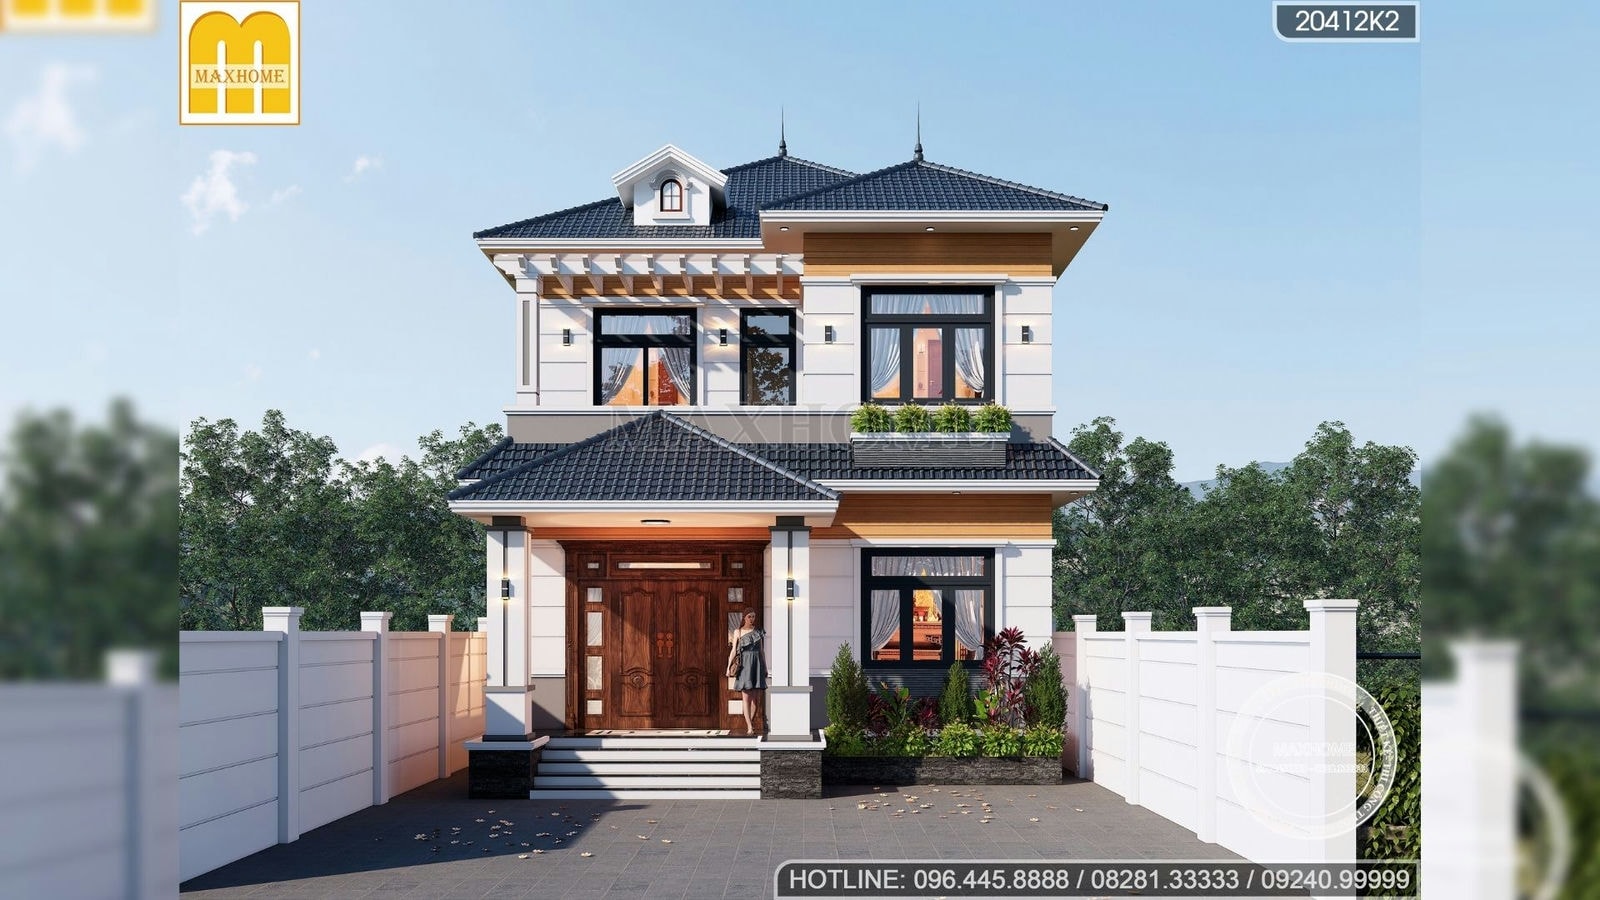 Maxhome thiết kế nhà mái Nhật 2 tầng đẹp hút hồn người nhìn | MH01553